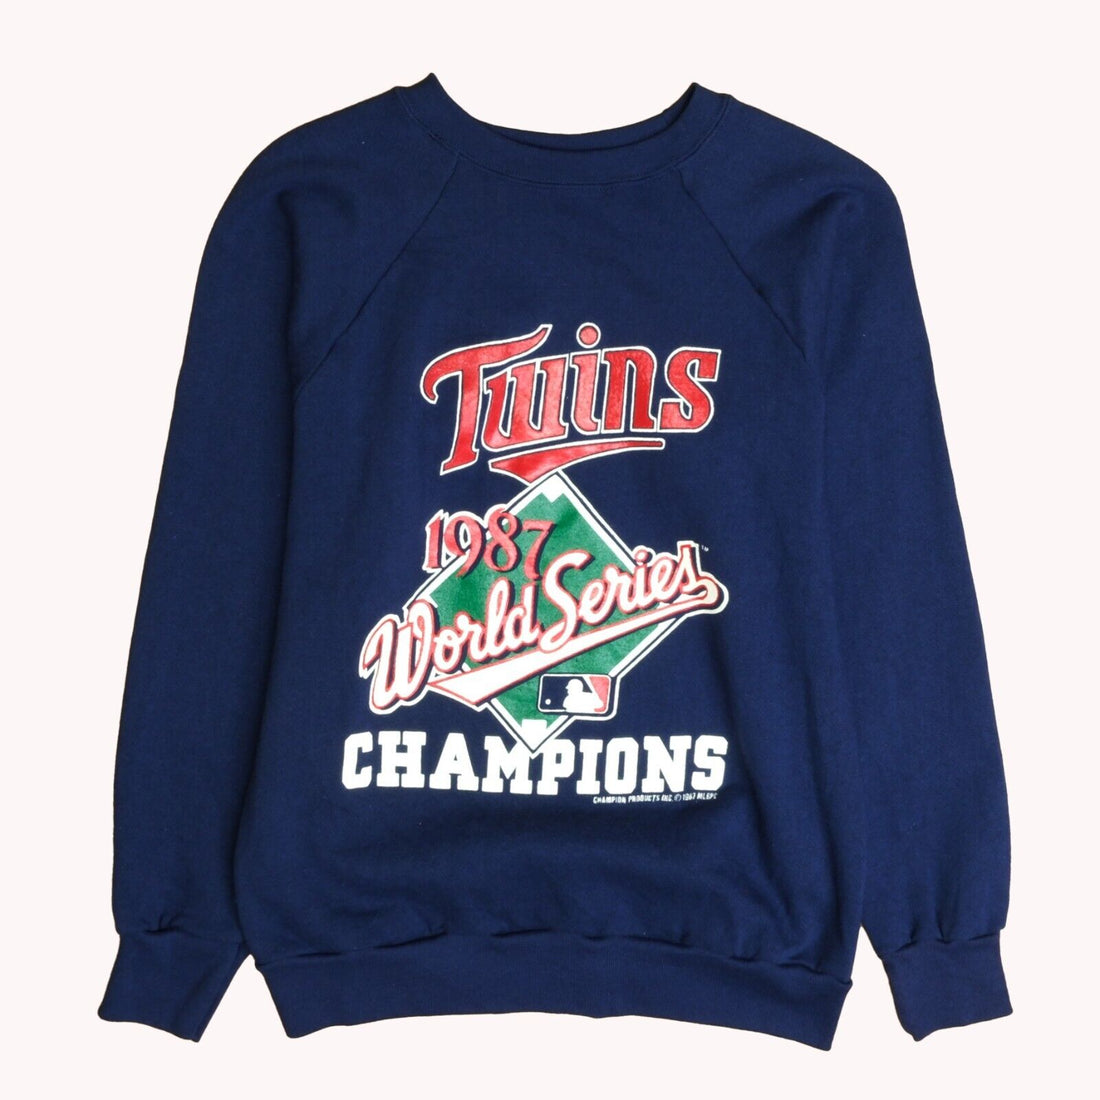 Vintage Minnesota Twins World Series Champion Sweatshirt Medium 1987 80s MLB